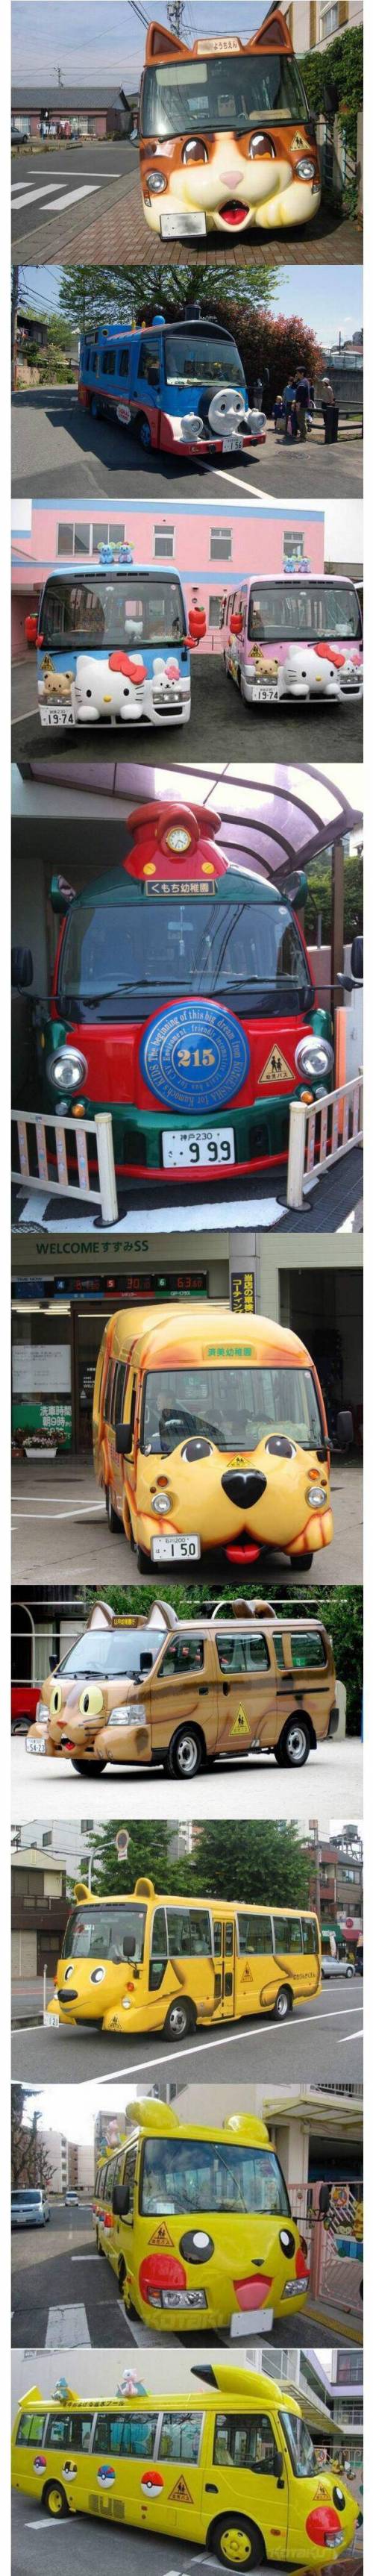 15 일본의 귀여운 유치원 버스들.jpg